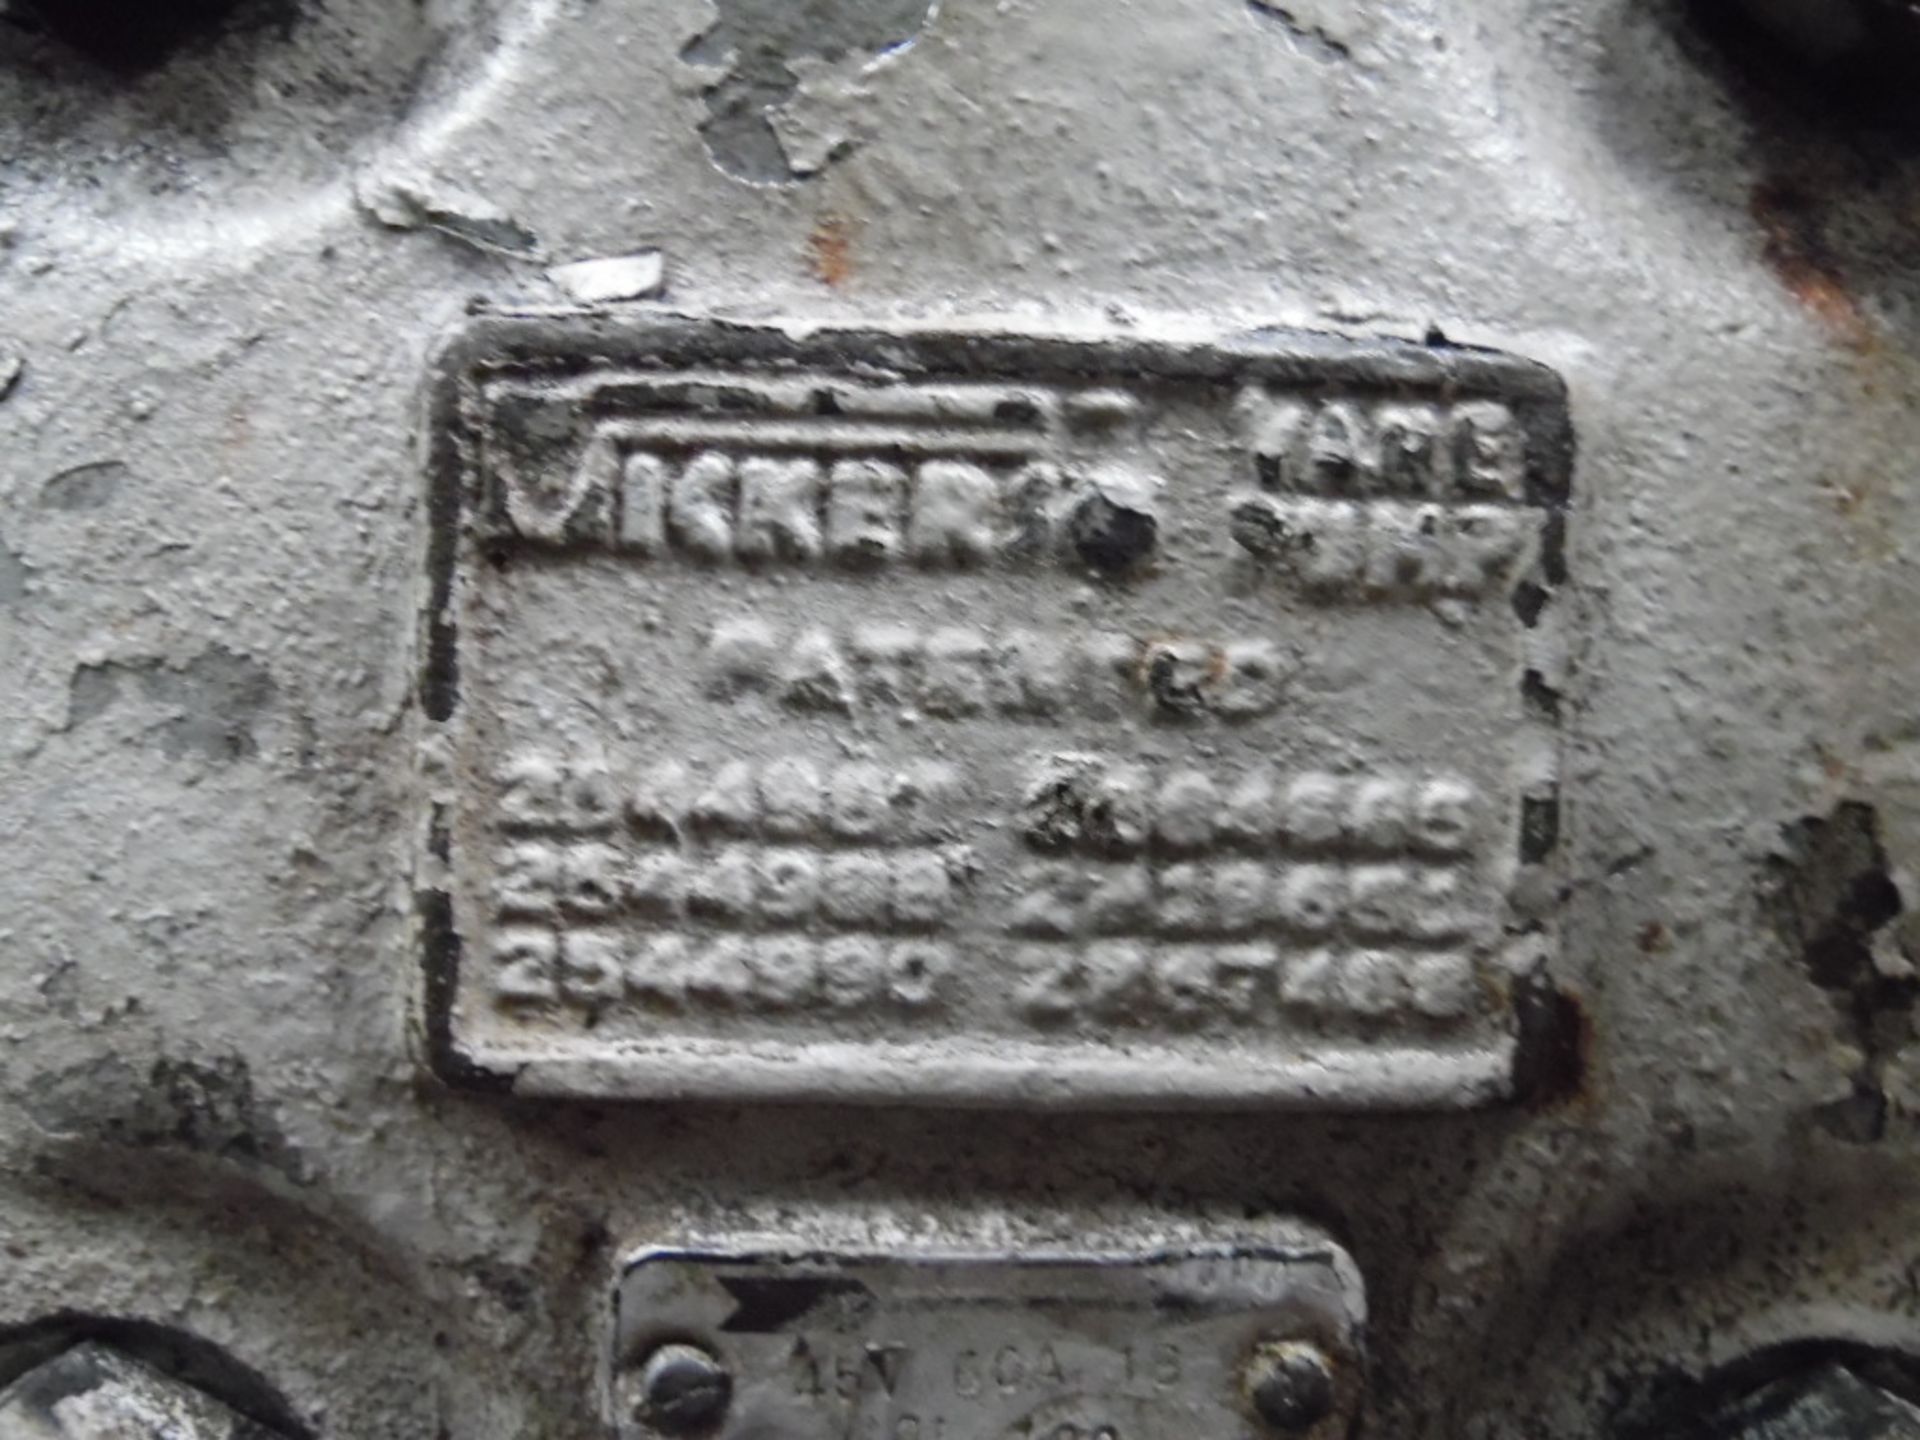 3 Bombas hidráulicas marca vicker (3 hidraulic pumps, vickers brand) - Image 2 of 2